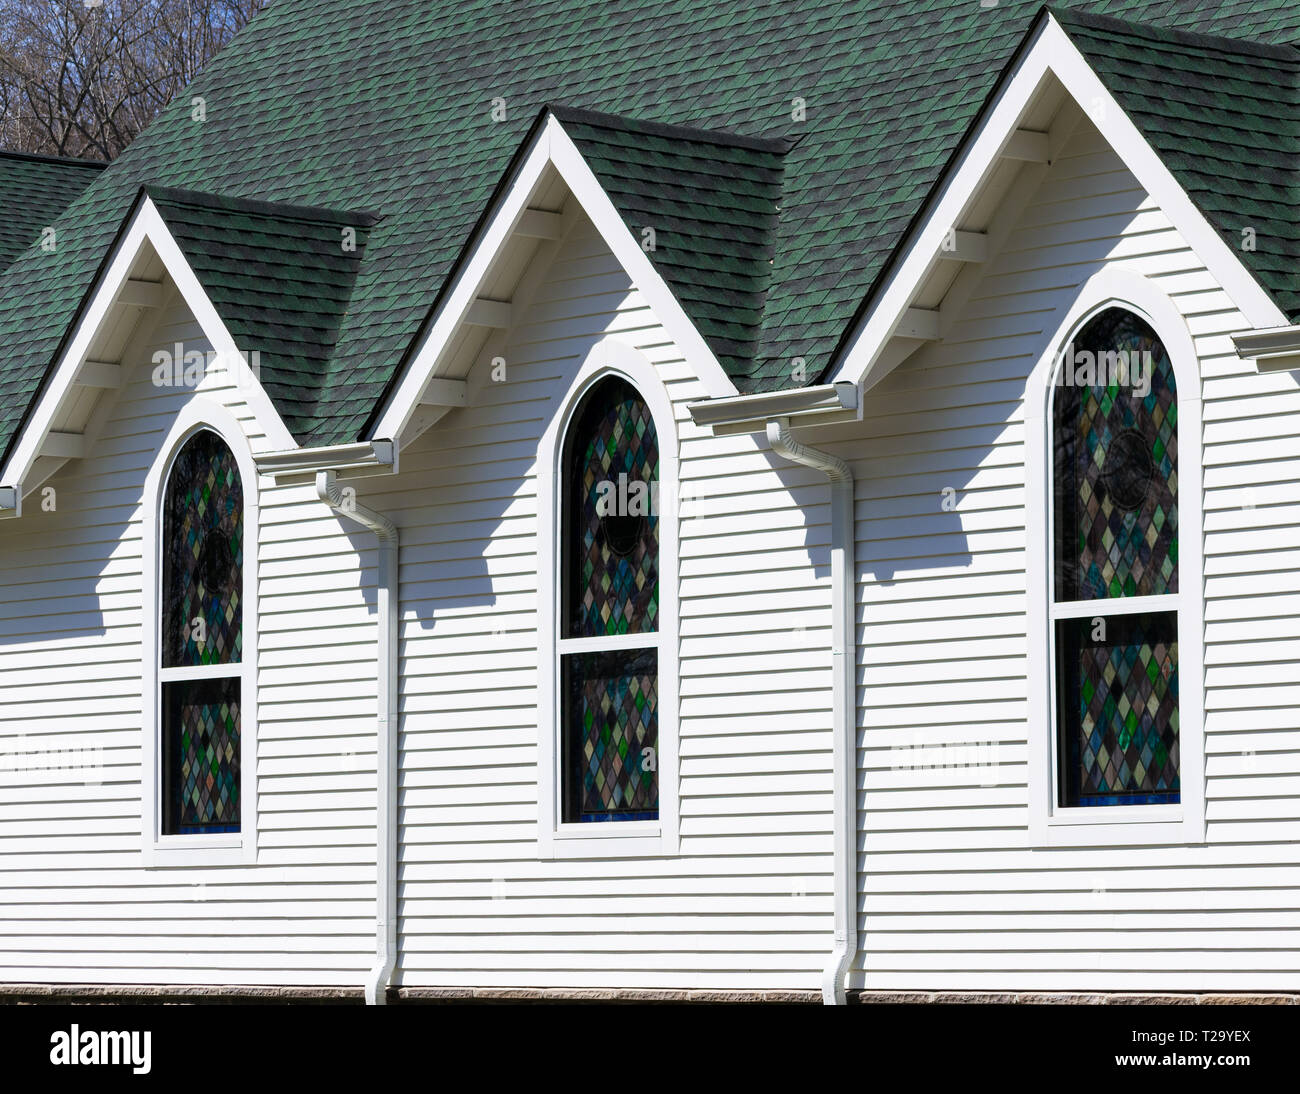 Vue extérieure oblique de toit vert foncé et blanc lumineux mur d'église, avec trois pignons de toit triangulaire au-dessus de trois vitraux Banque D'Images